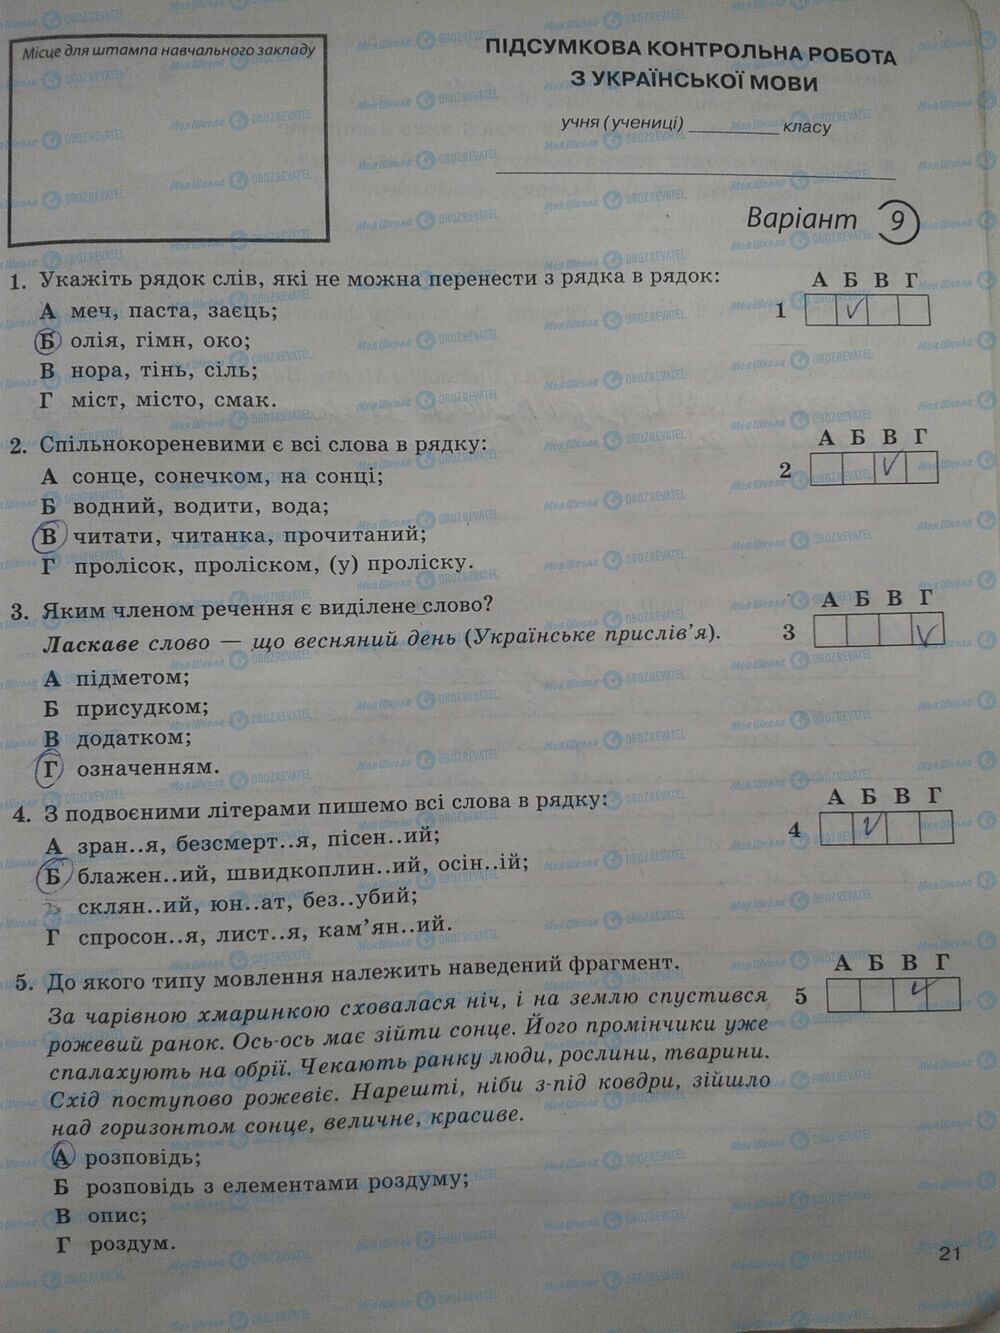 ГДЗ Укр мова 5 класс страница стр. 21